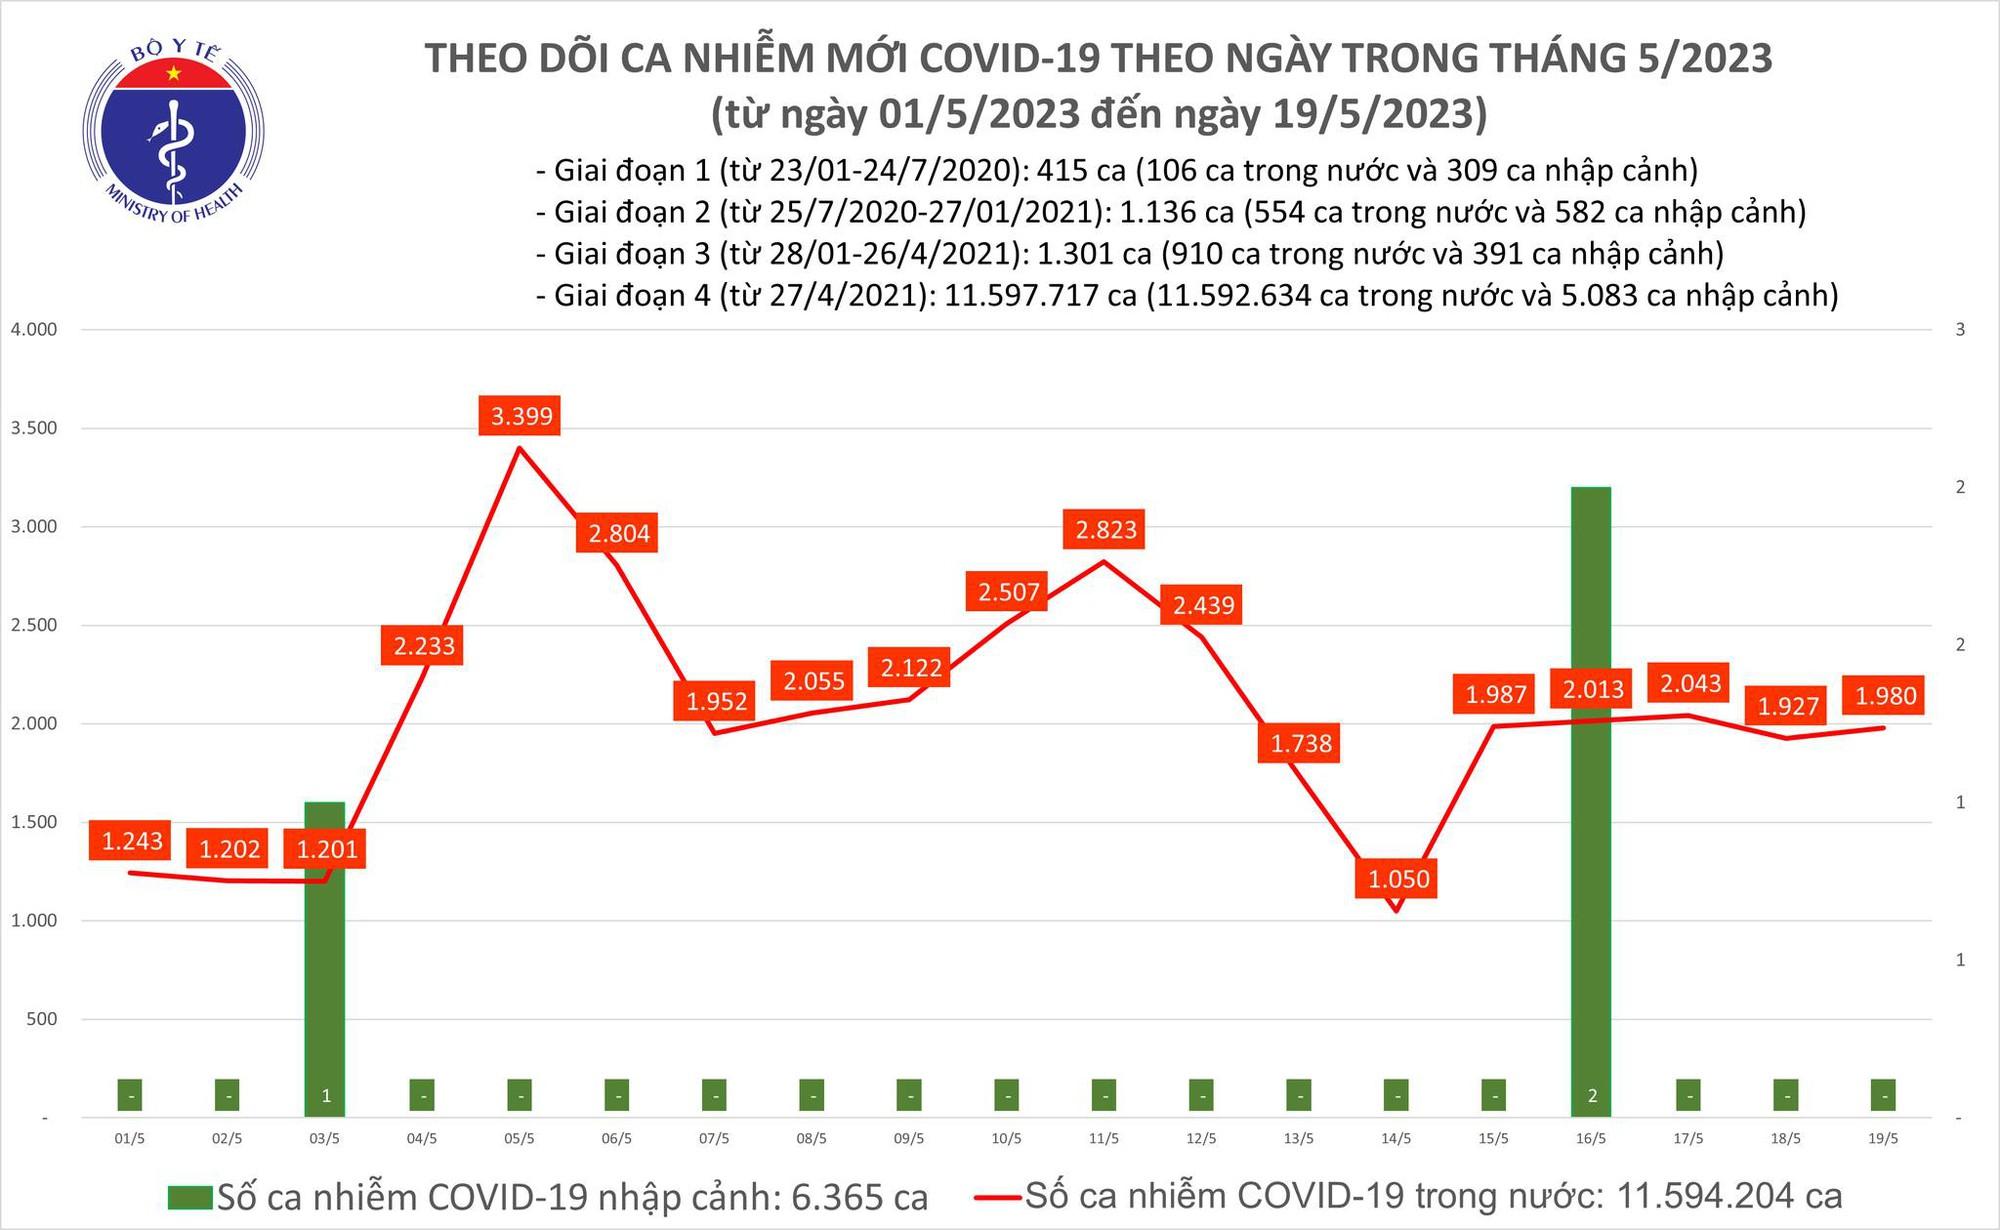 Ngày 19/5: Có gần 2.000 ca COVID-19 mới trong 24h qua - Ảnh 1.